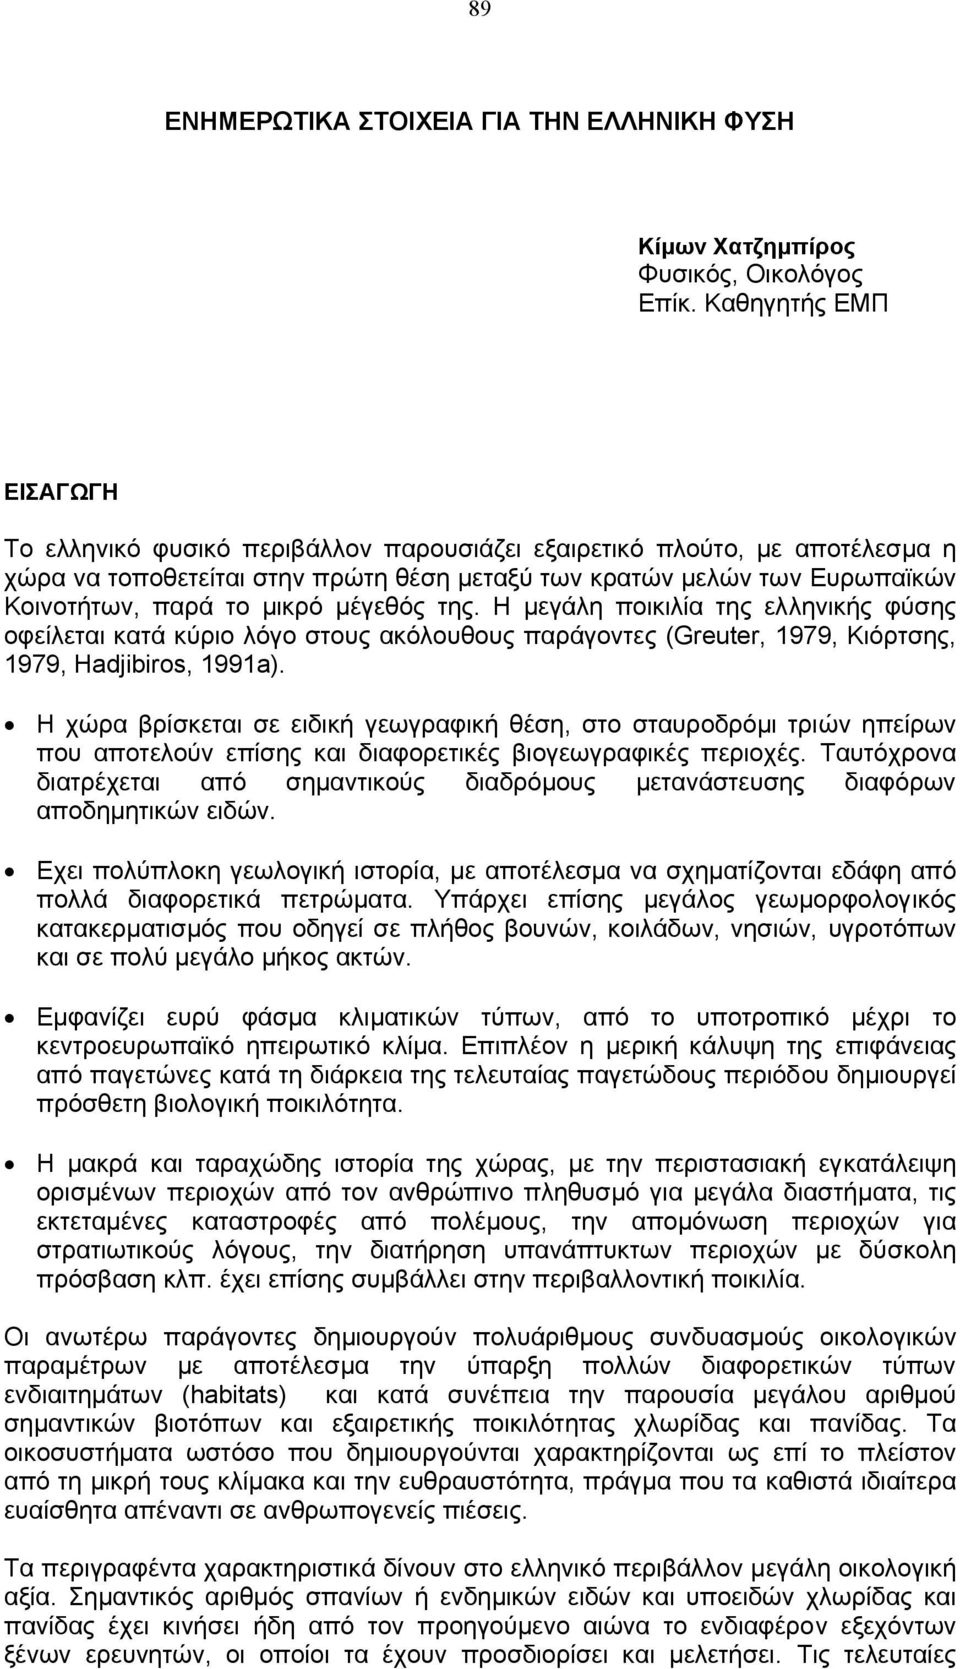 µικρό µέγεθός της. Η µεγάλη ποικιλία της ελληνικής φύσης οφείλεται κατά κύριο λόγο στους ακόλουθους παράγοντες (Greuter, 1979, Κιόρτσης, 1979, Hadjibiros, 1991a).